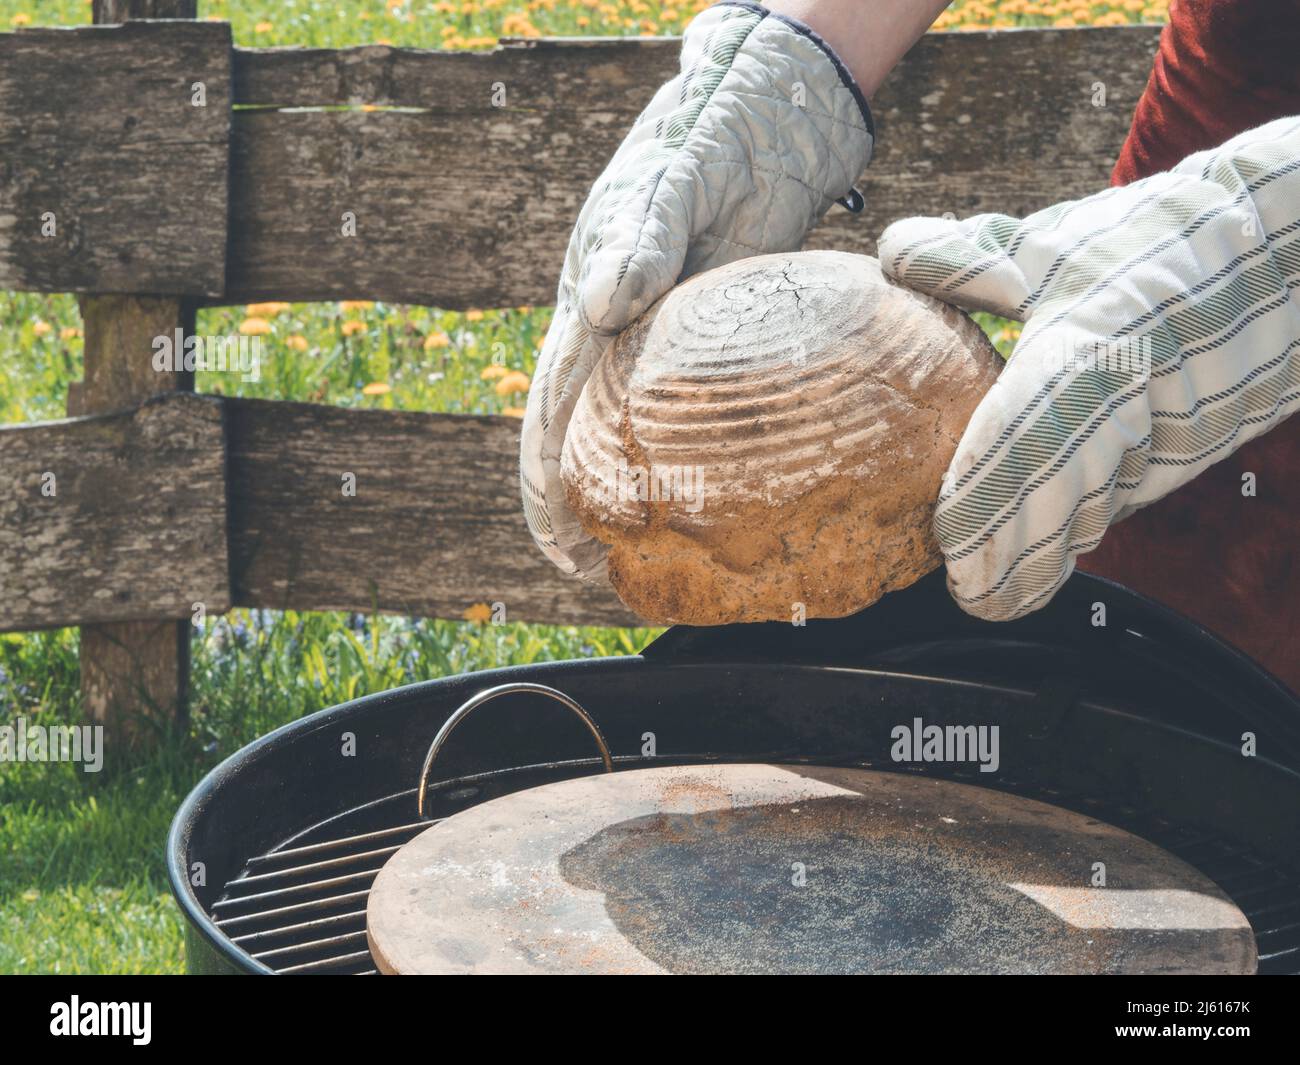 utilisez des gants de cuisine pour retirer le pain fait maison du barbecue ou du gril à charbon de bois après avoir fait cuire le meilleur pain jamais Banque D'Images